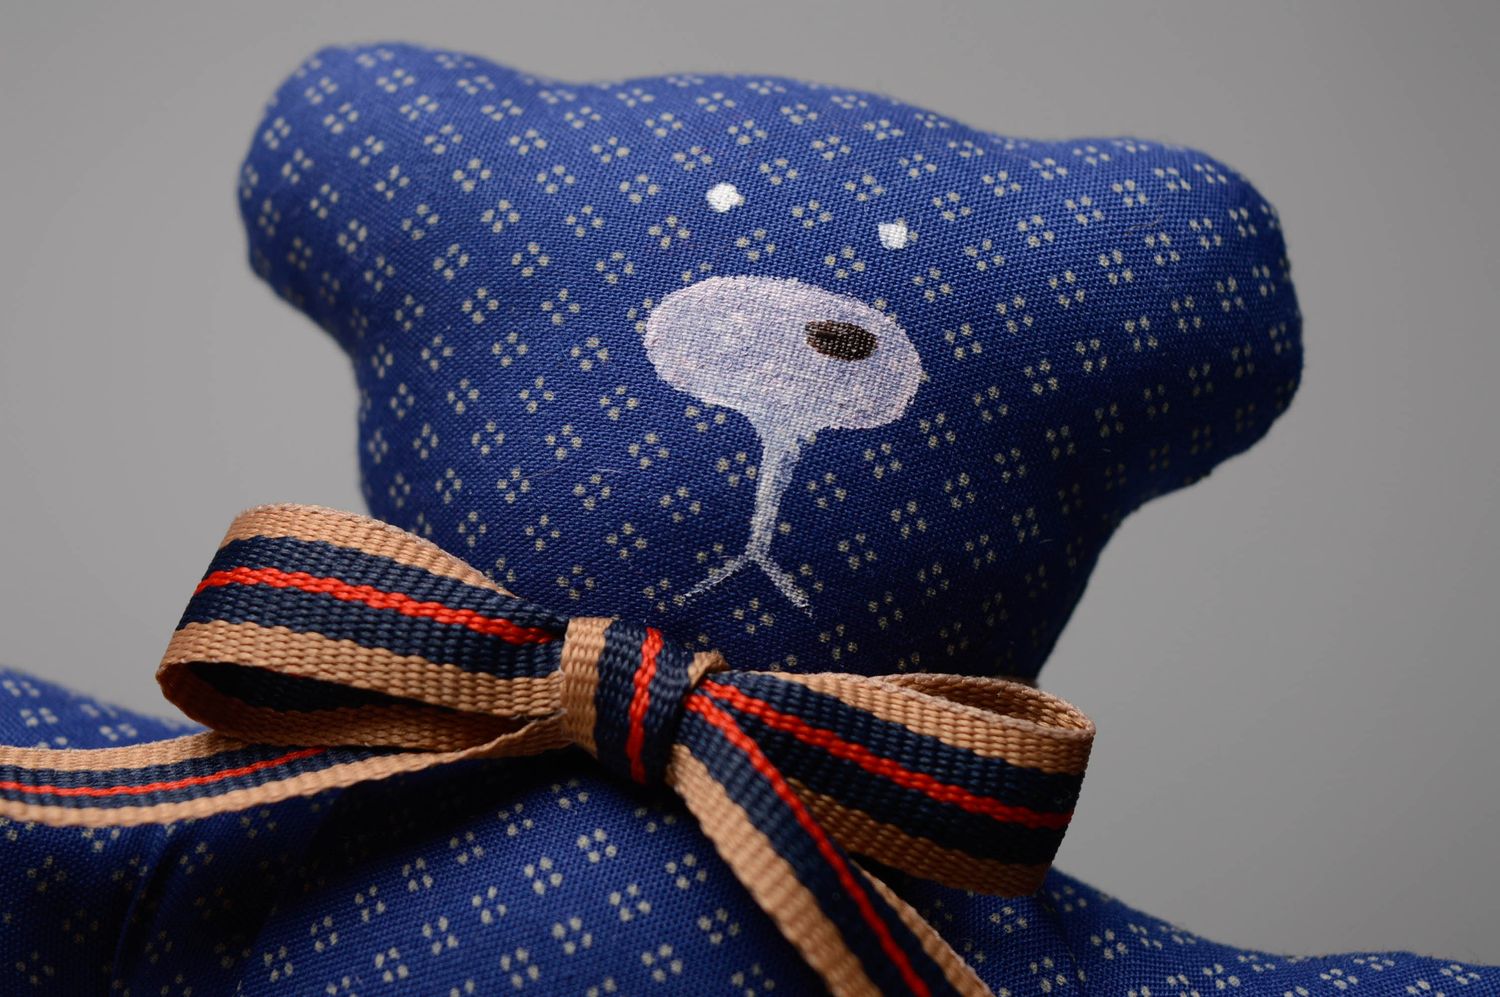 Мягкая игрушка из ткани пошитая вручную Мягкий синий мишка фото 3